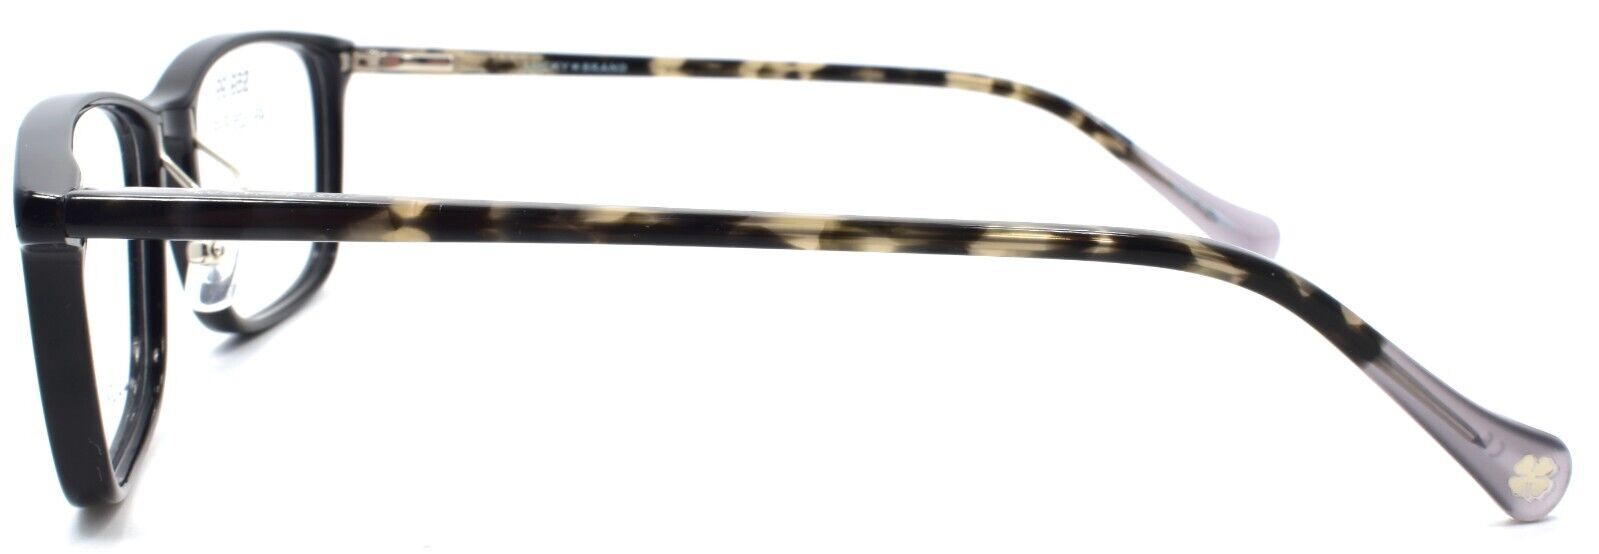 3-LUCKY BRAND VLBD516 Men's Eyeglasses Frames 54-17-140 Black-751286352627-IKSpecs